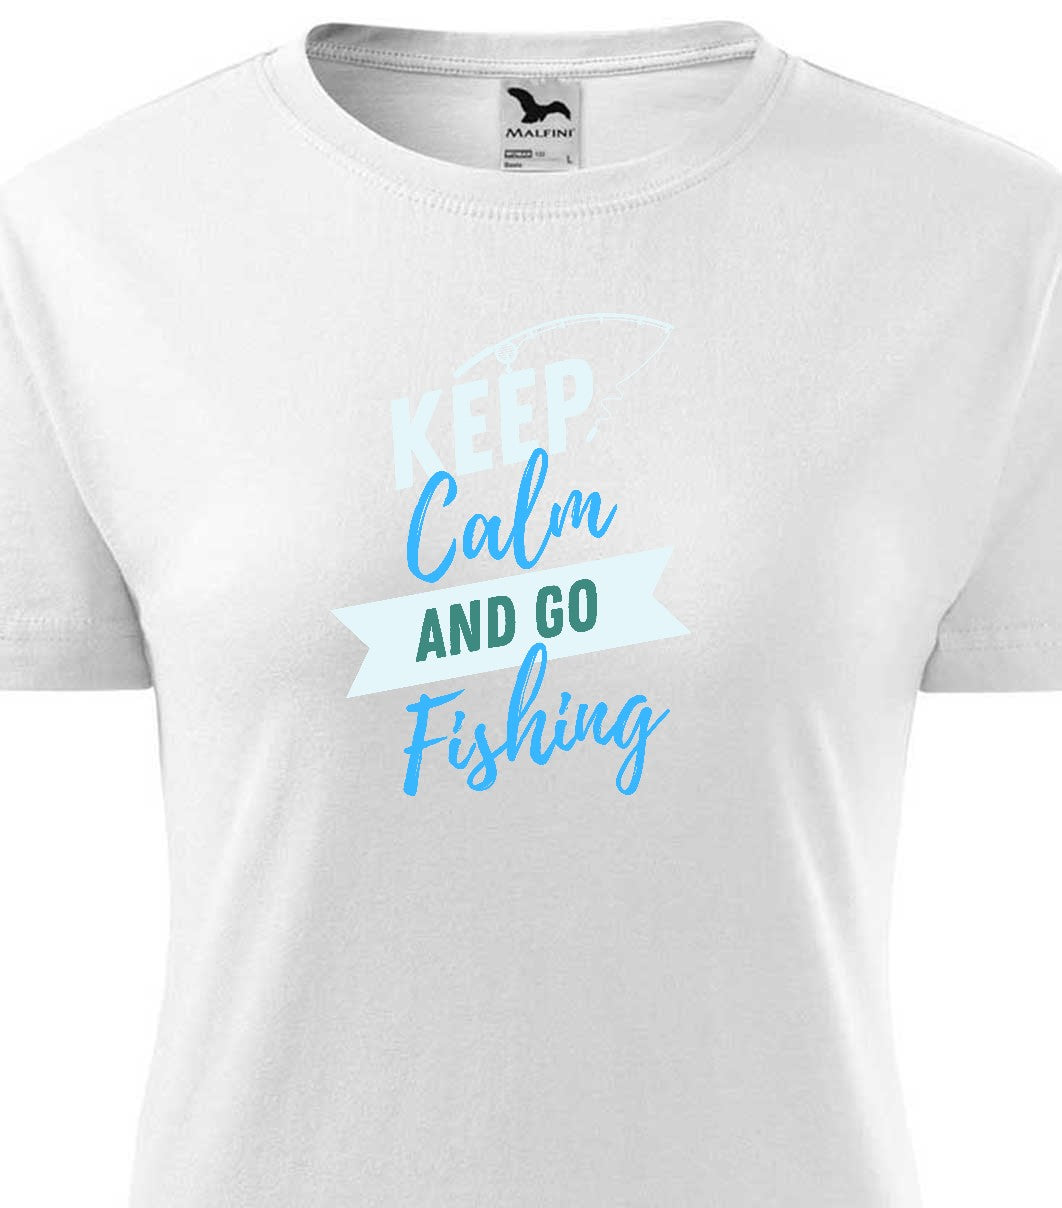 Keep calm and go fishing női technikai póló